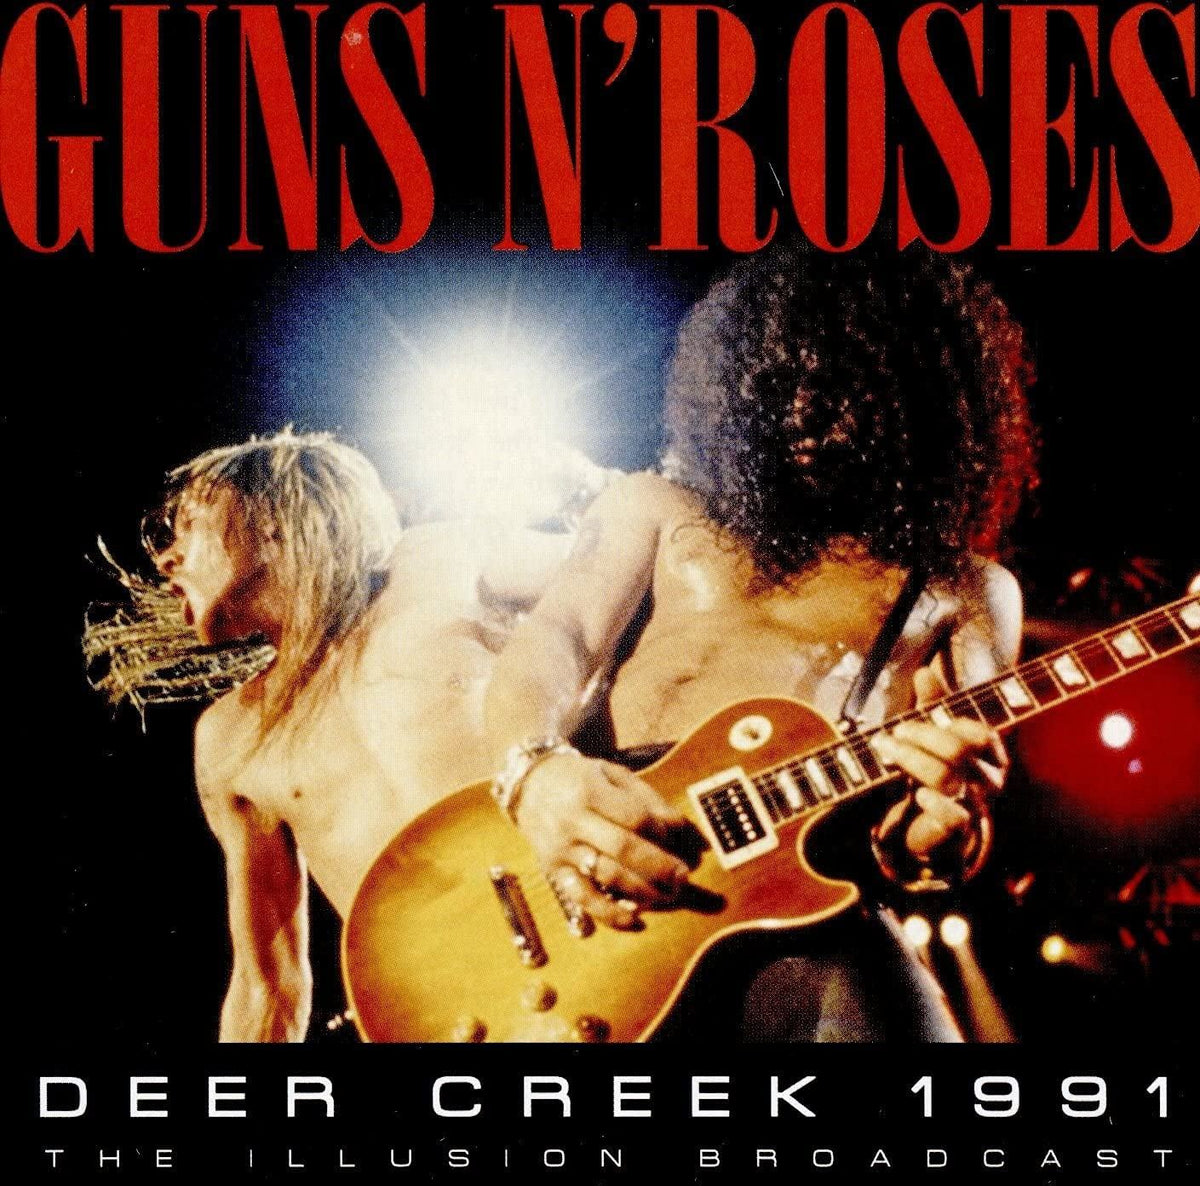 Guns N Roses - Deer Creek 1991 - Vinyl